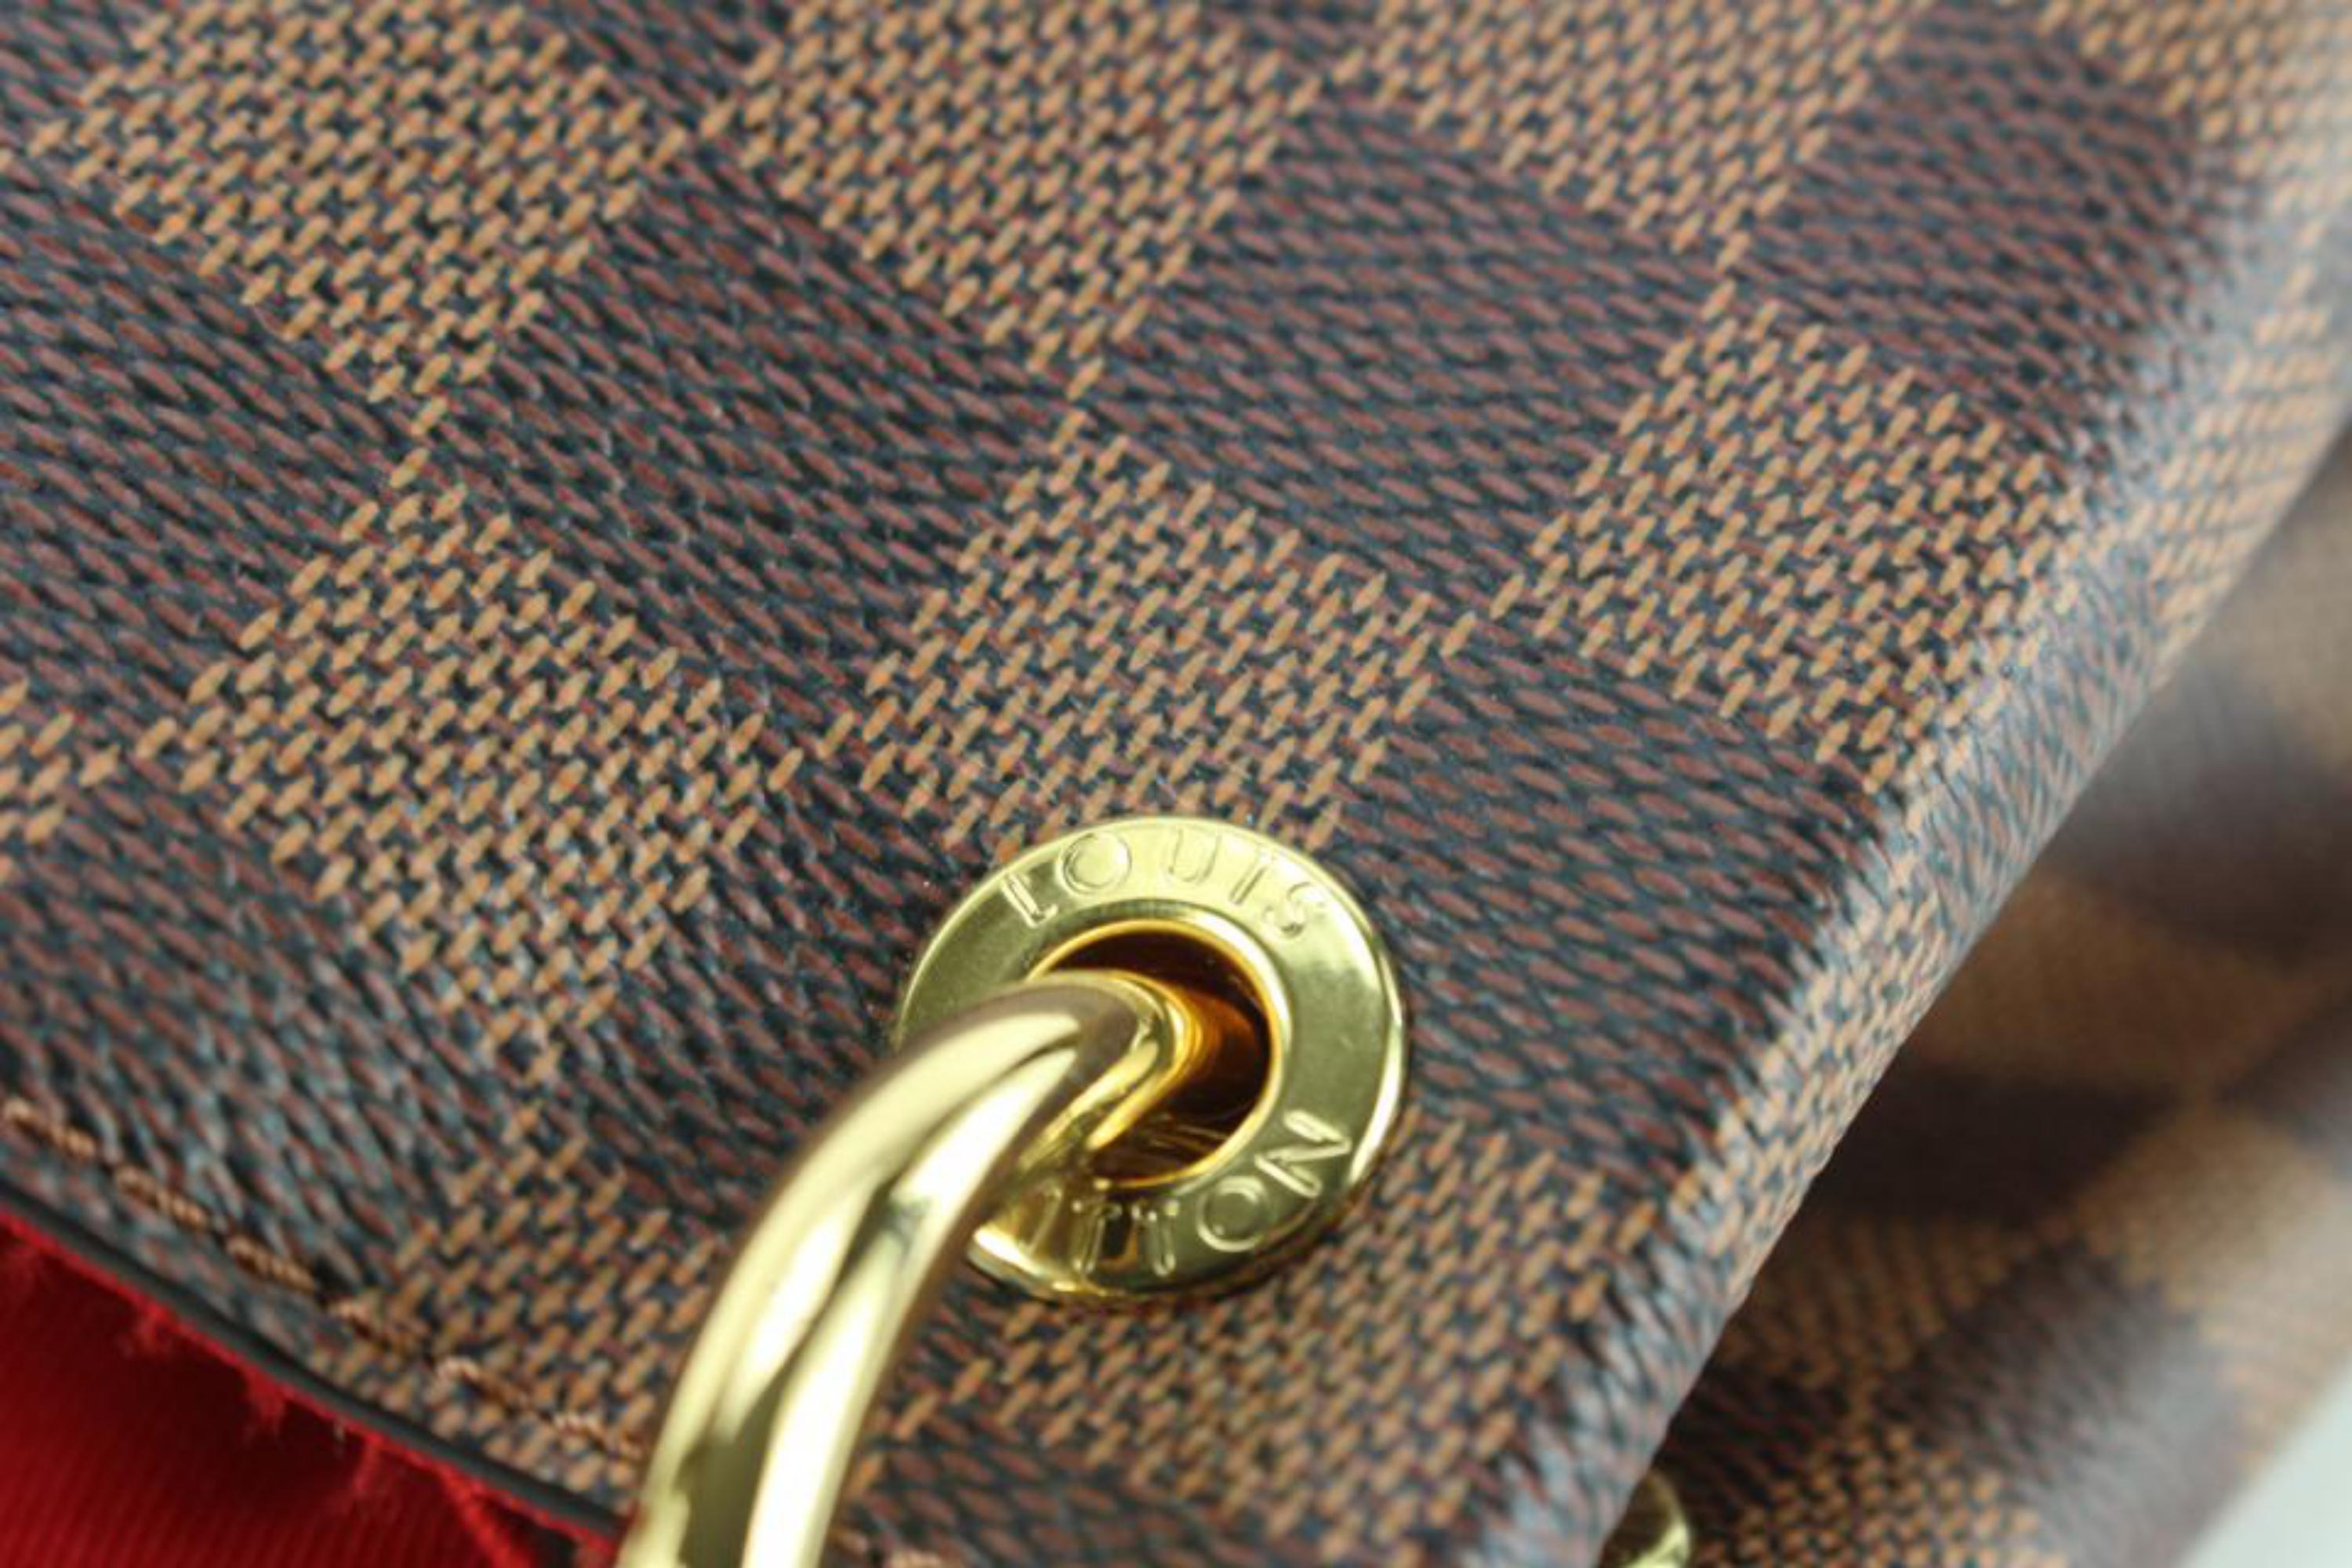 Louis Vuitton Delightful Pm Handbag - For Sale on 1stDibs  louis vuitton  delightful vs graceful, lv delightful pm, delightful vs graceful